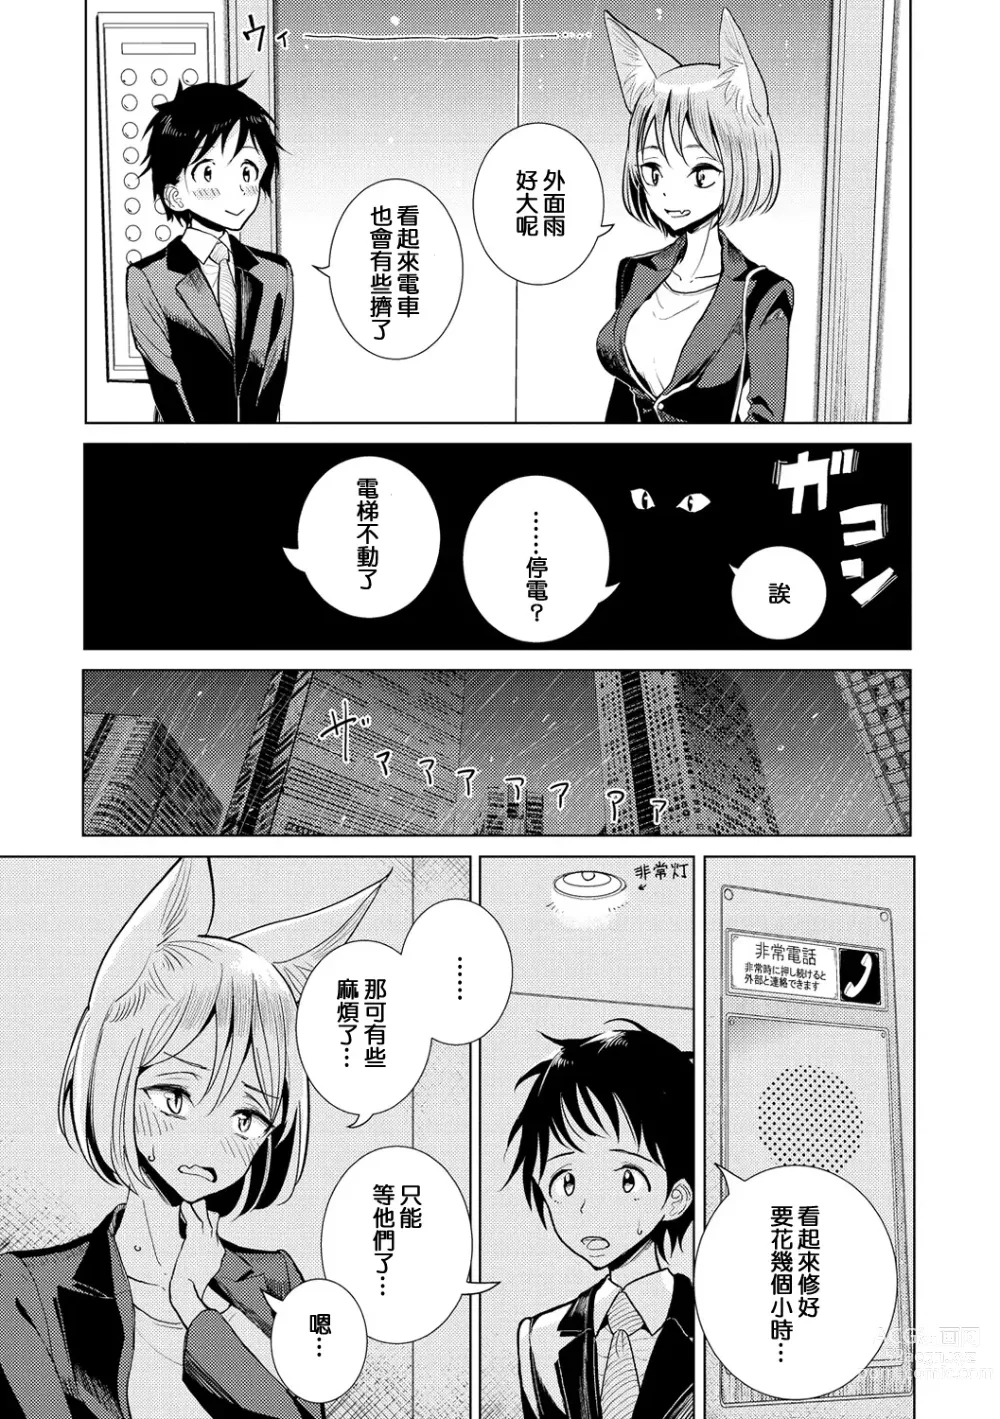 Page 4 of manga Boku no Joushi wa